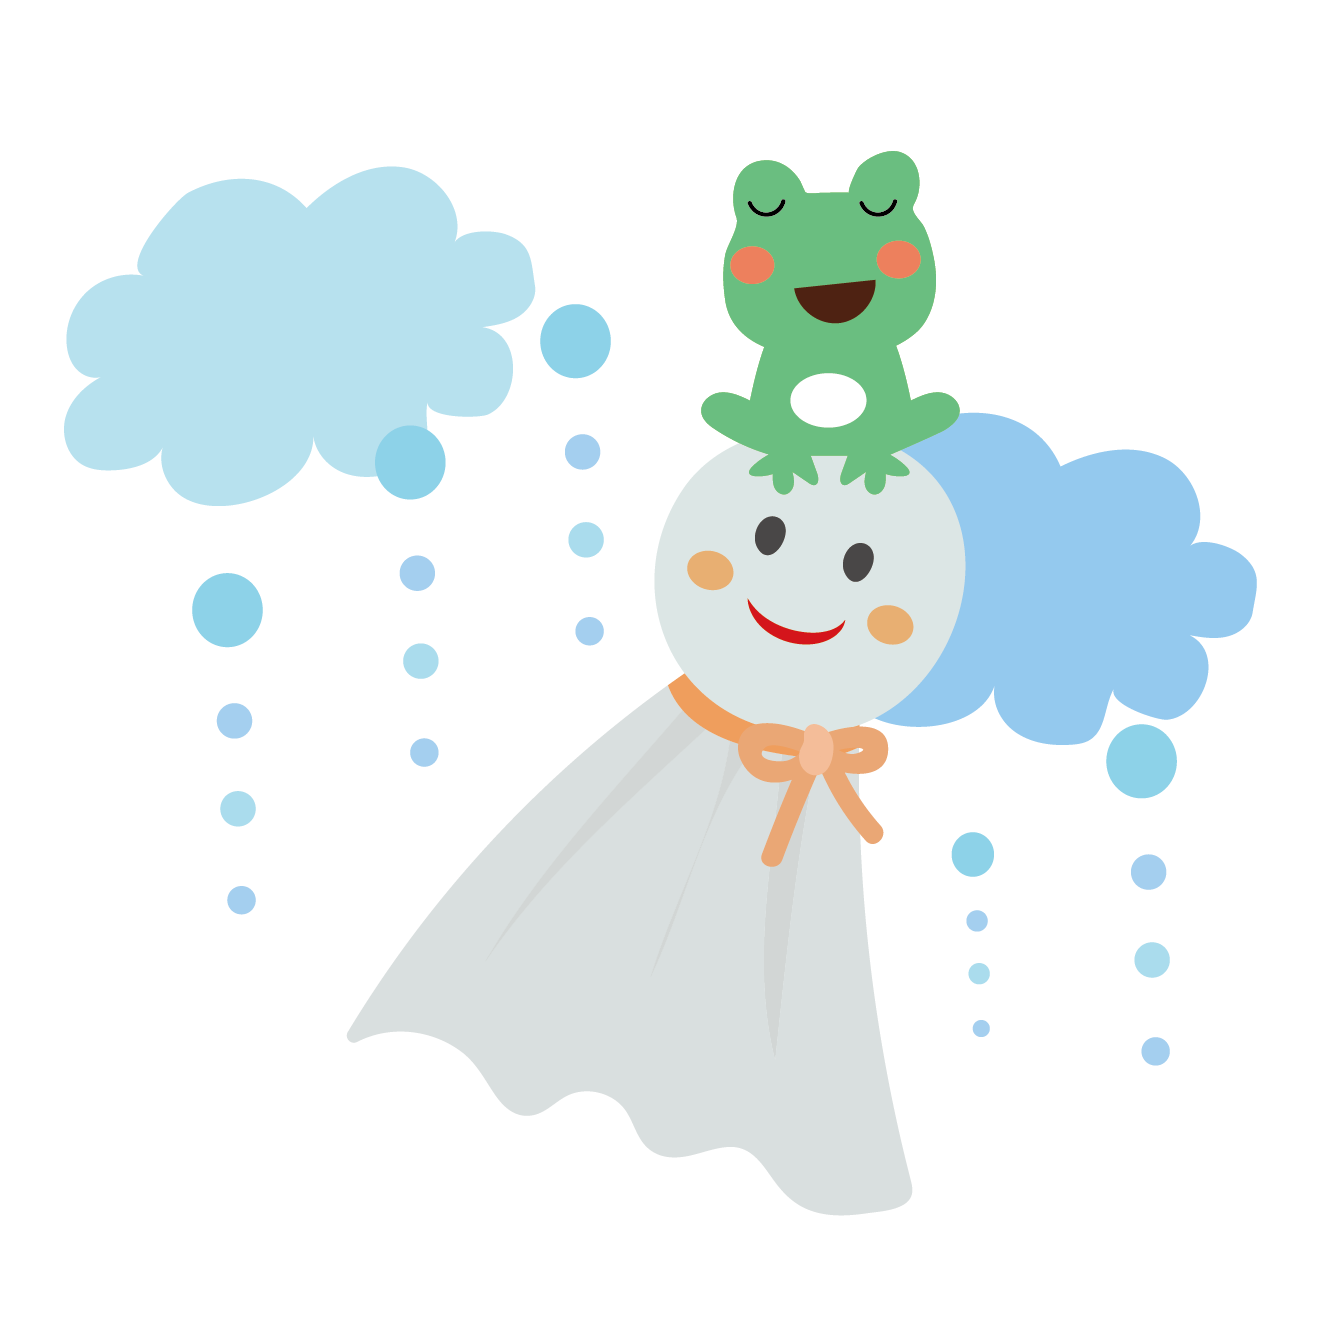 カエル 蛙 とてるてる坊主のイラスト 梅雨 商用フリー 無料 の